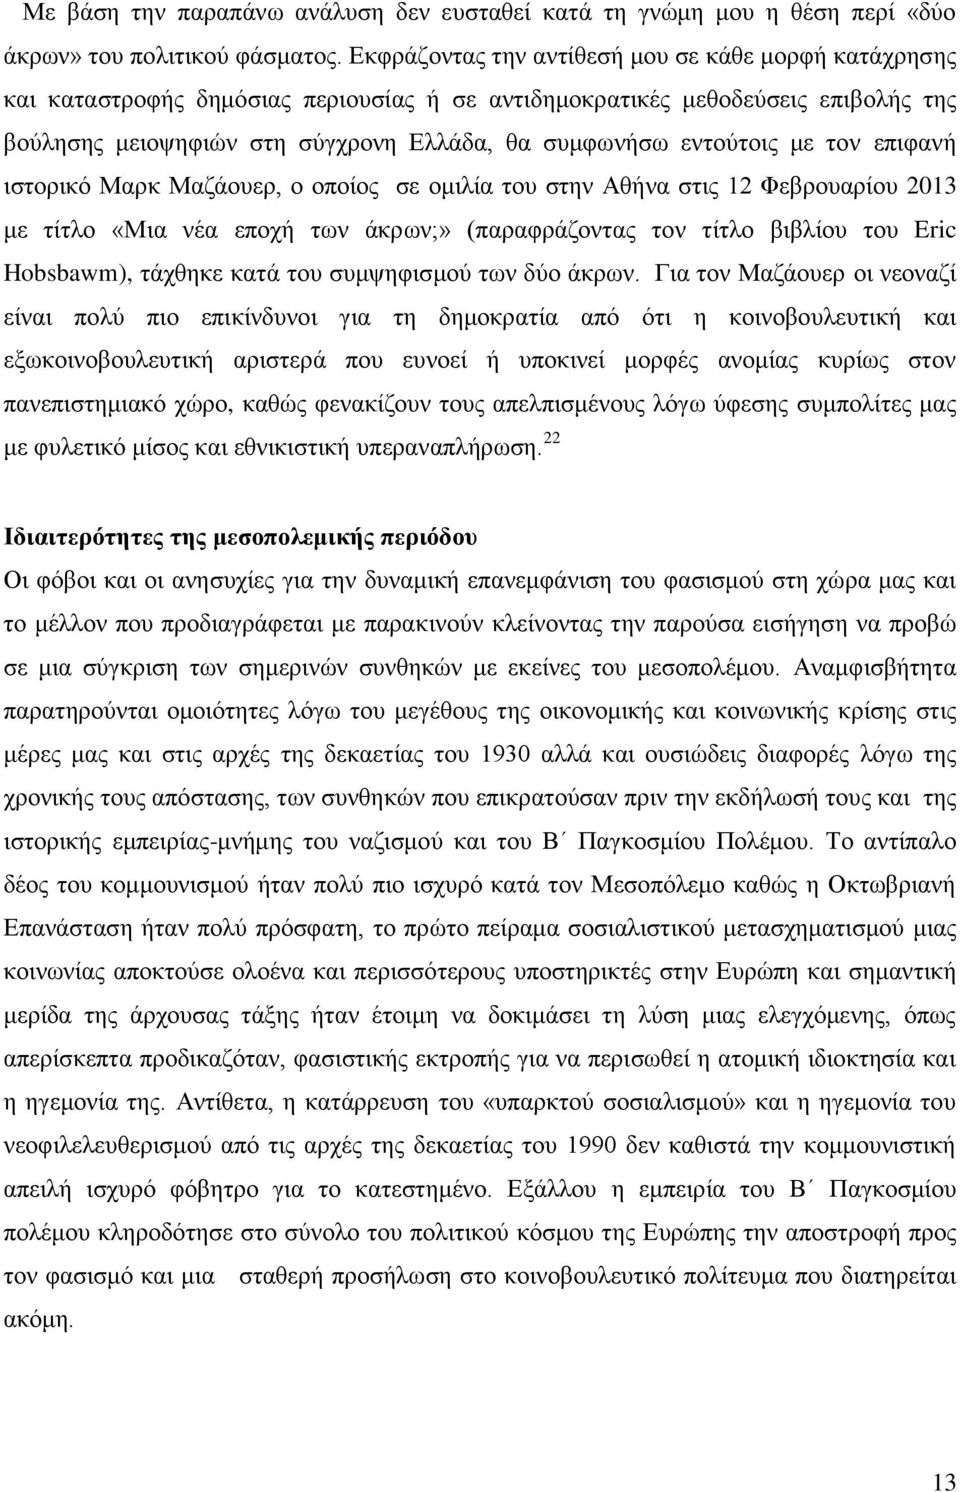 εντούτοις με τον επιφανή ιστορικό Μαρκ Μαζάουερ, ο οποίος σε ομιλία του στην Αθήνα στις 12 Φεβρουαρίου 2013 με τίτλο «Μια νέα εποχή των άκρων;» (παραφράζοντας τον τίτλο βιβλίου του Eric Hobsbawm),